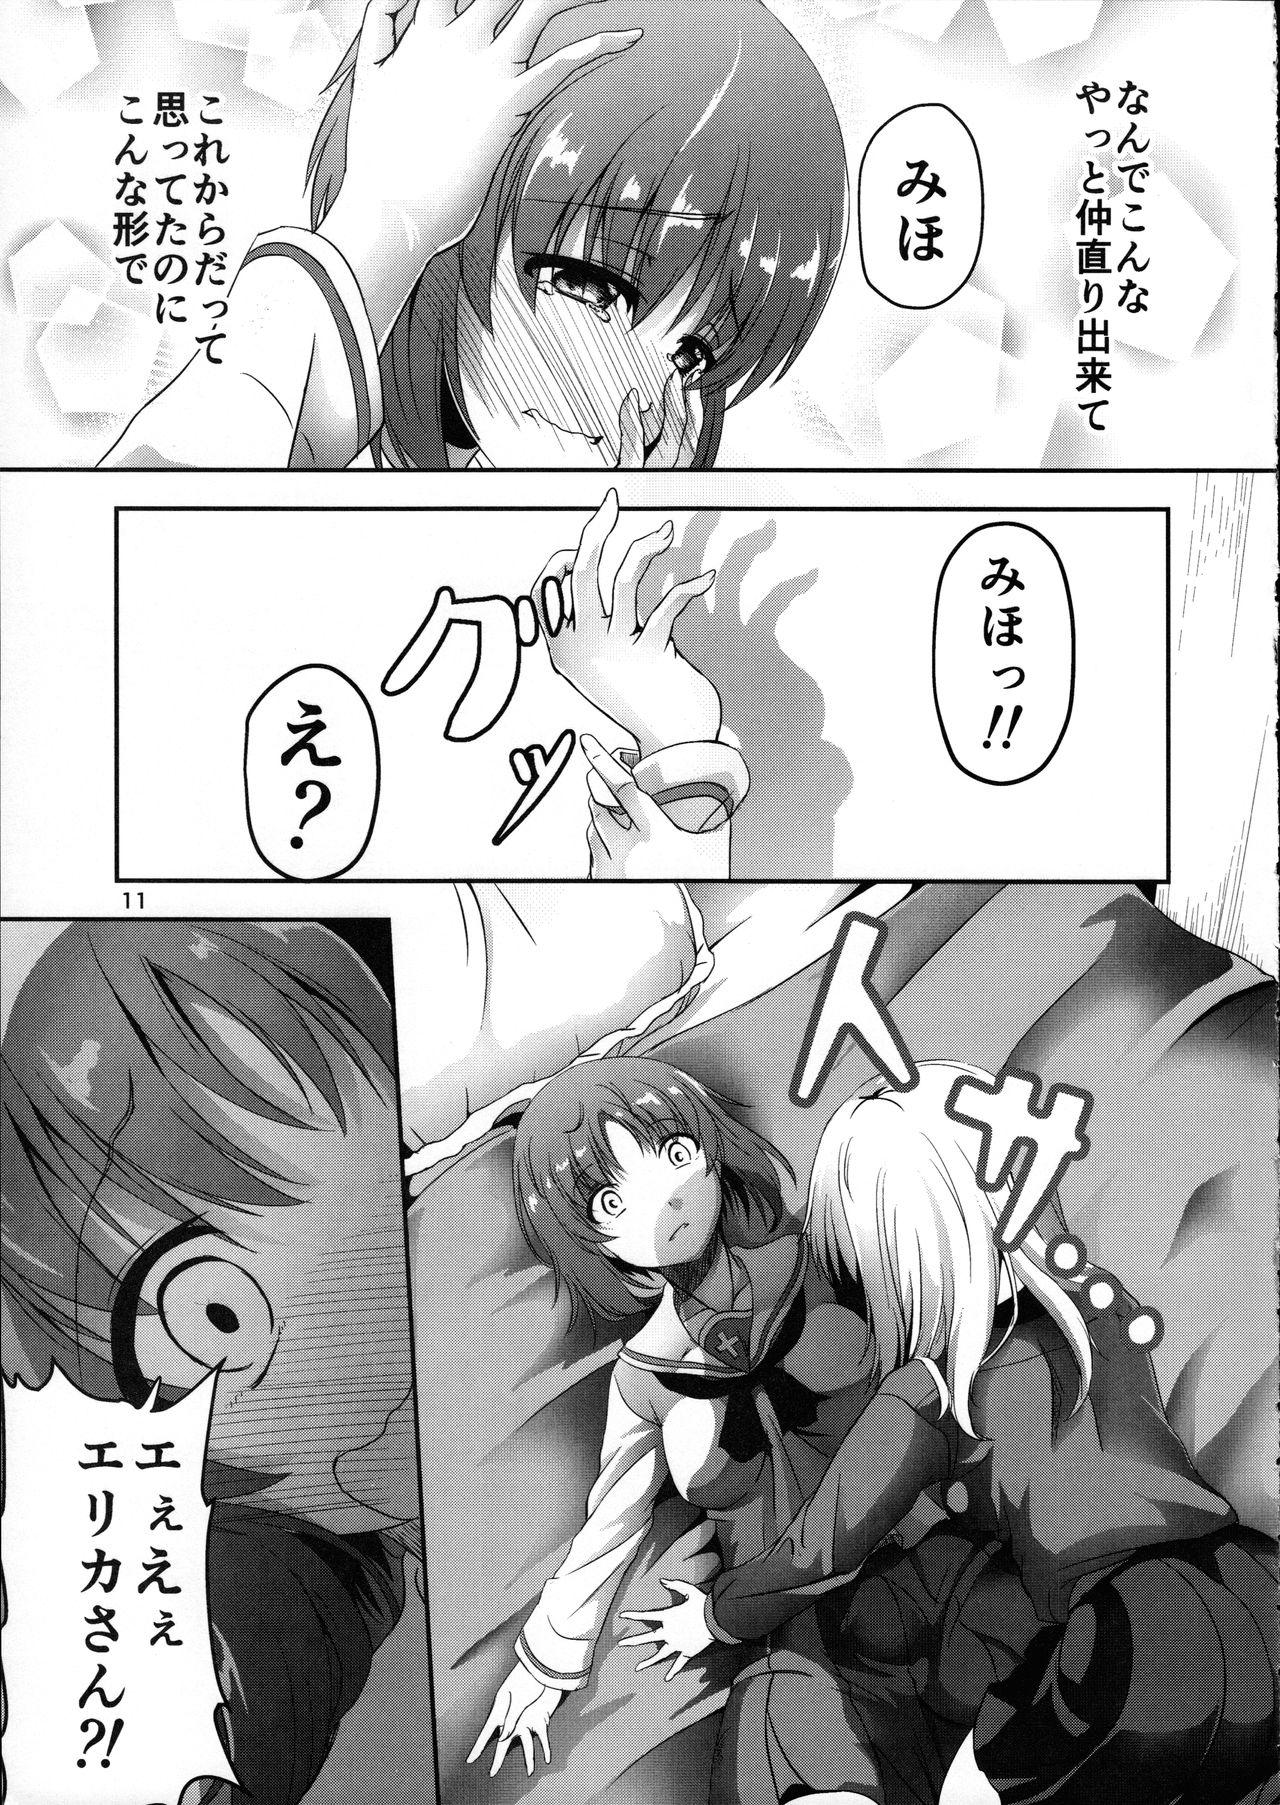 Horny (C91) [Pandora Box (Hakomaru.)] Ankou no Noroi?! Miho-san ni Haechatta!? Ganbare Erika-san!! (Girls und Panzer) - Girls und panzer Para - Page 11